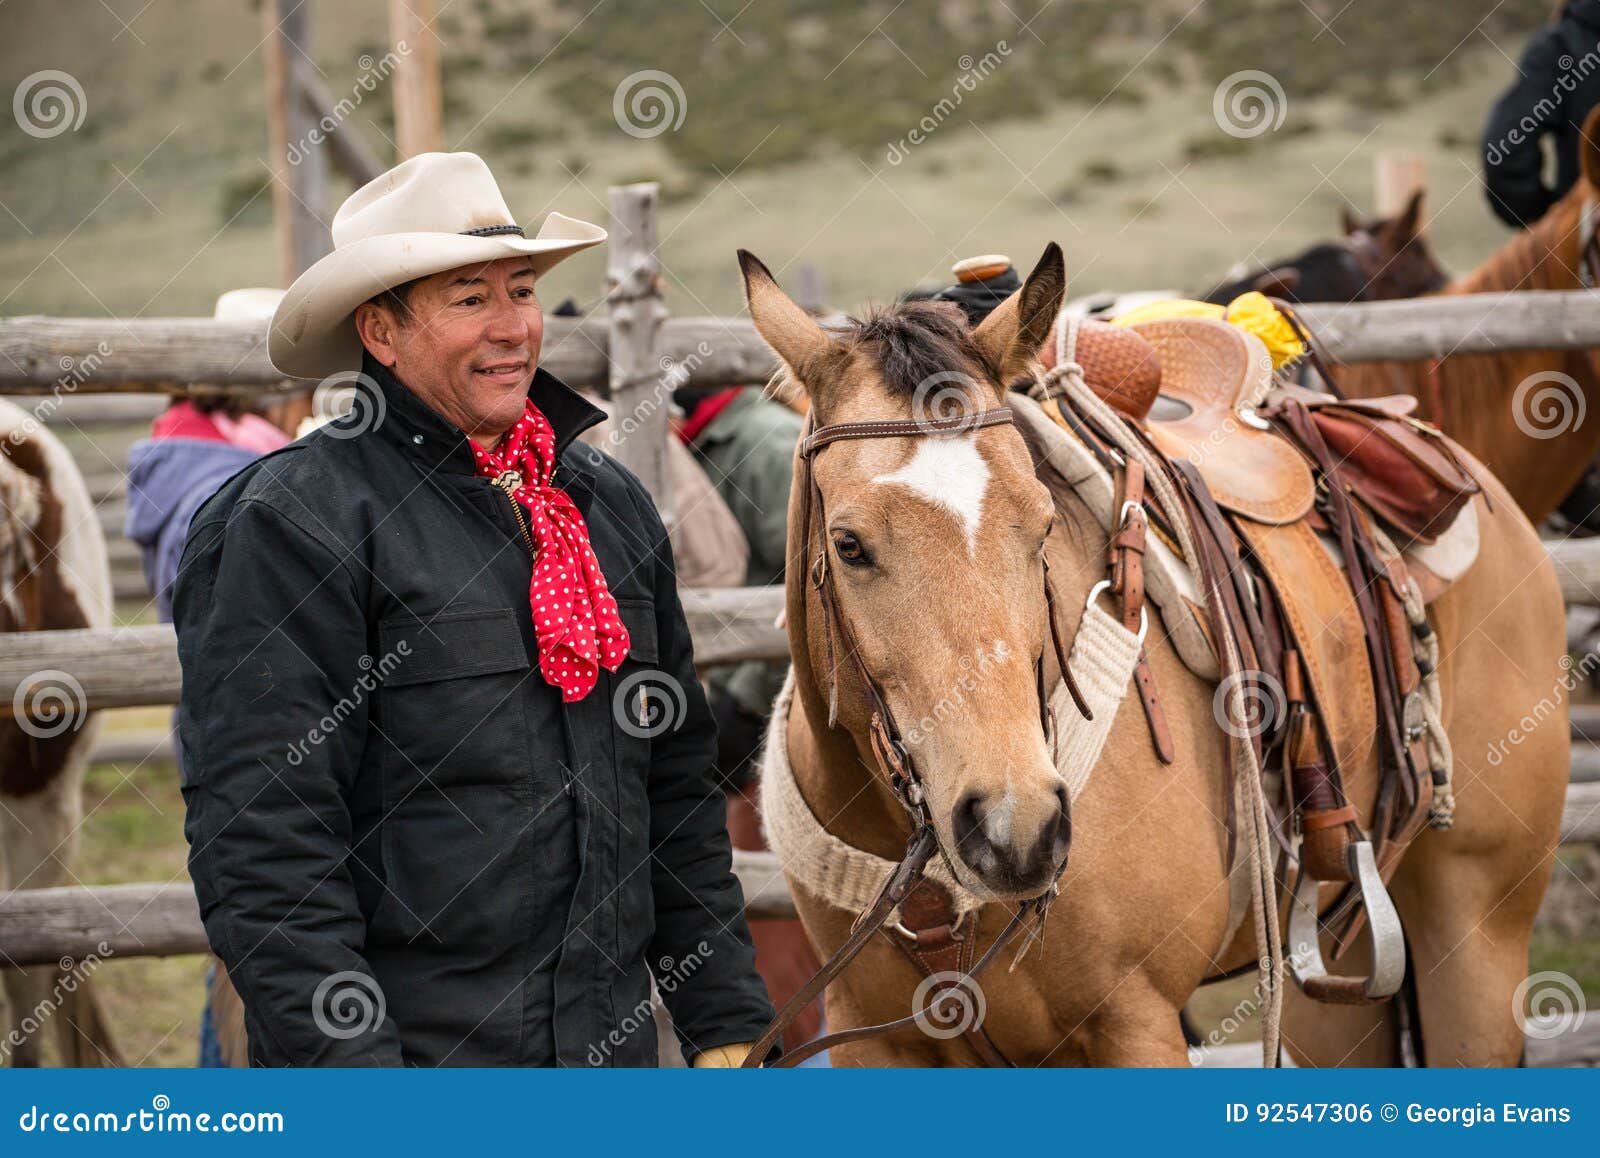 western cowboy with saddled buckskin horse ready to go roundup horses